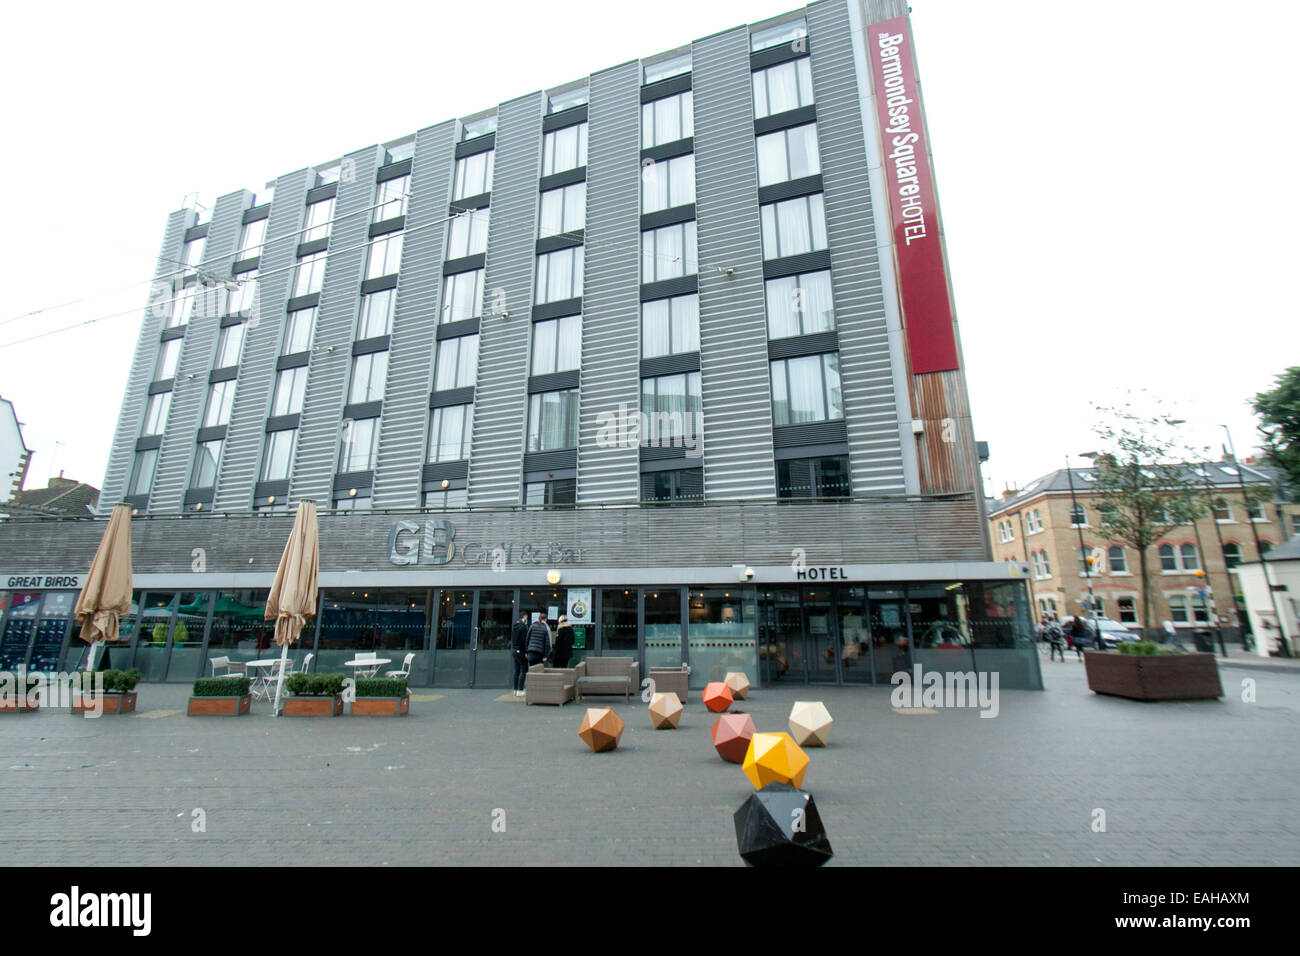 London, UK. 15. November 2014. Bermondsey Square Hotel in London wurde Nick namens "Hotel Scharia" nach seinen neuen Besitzern ein Scharia-Menü entfernen von Schweinefleisch und Alkohol islamischen Geschmack und Traditionen Credit entspricht eingeführt: Amer Ghazzal/Alamy Live-Nachrichten Stockfoto